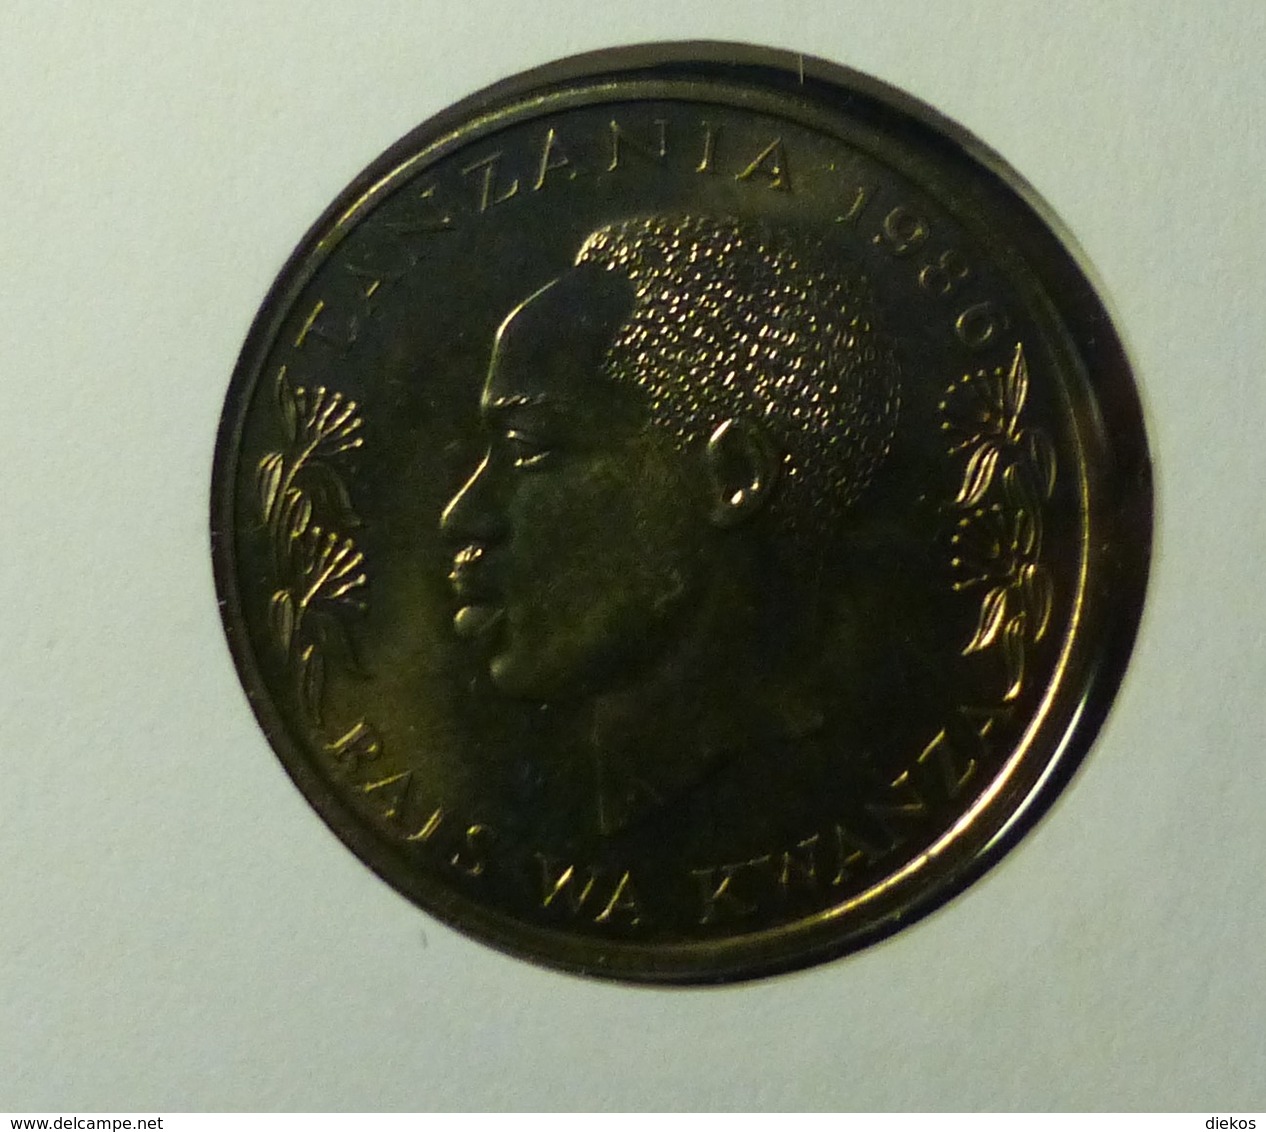 Numisbrief Coin Cover  Tanzania 100 Shilingi 1986 Uganda Elefant   #numis80 - Tanzania